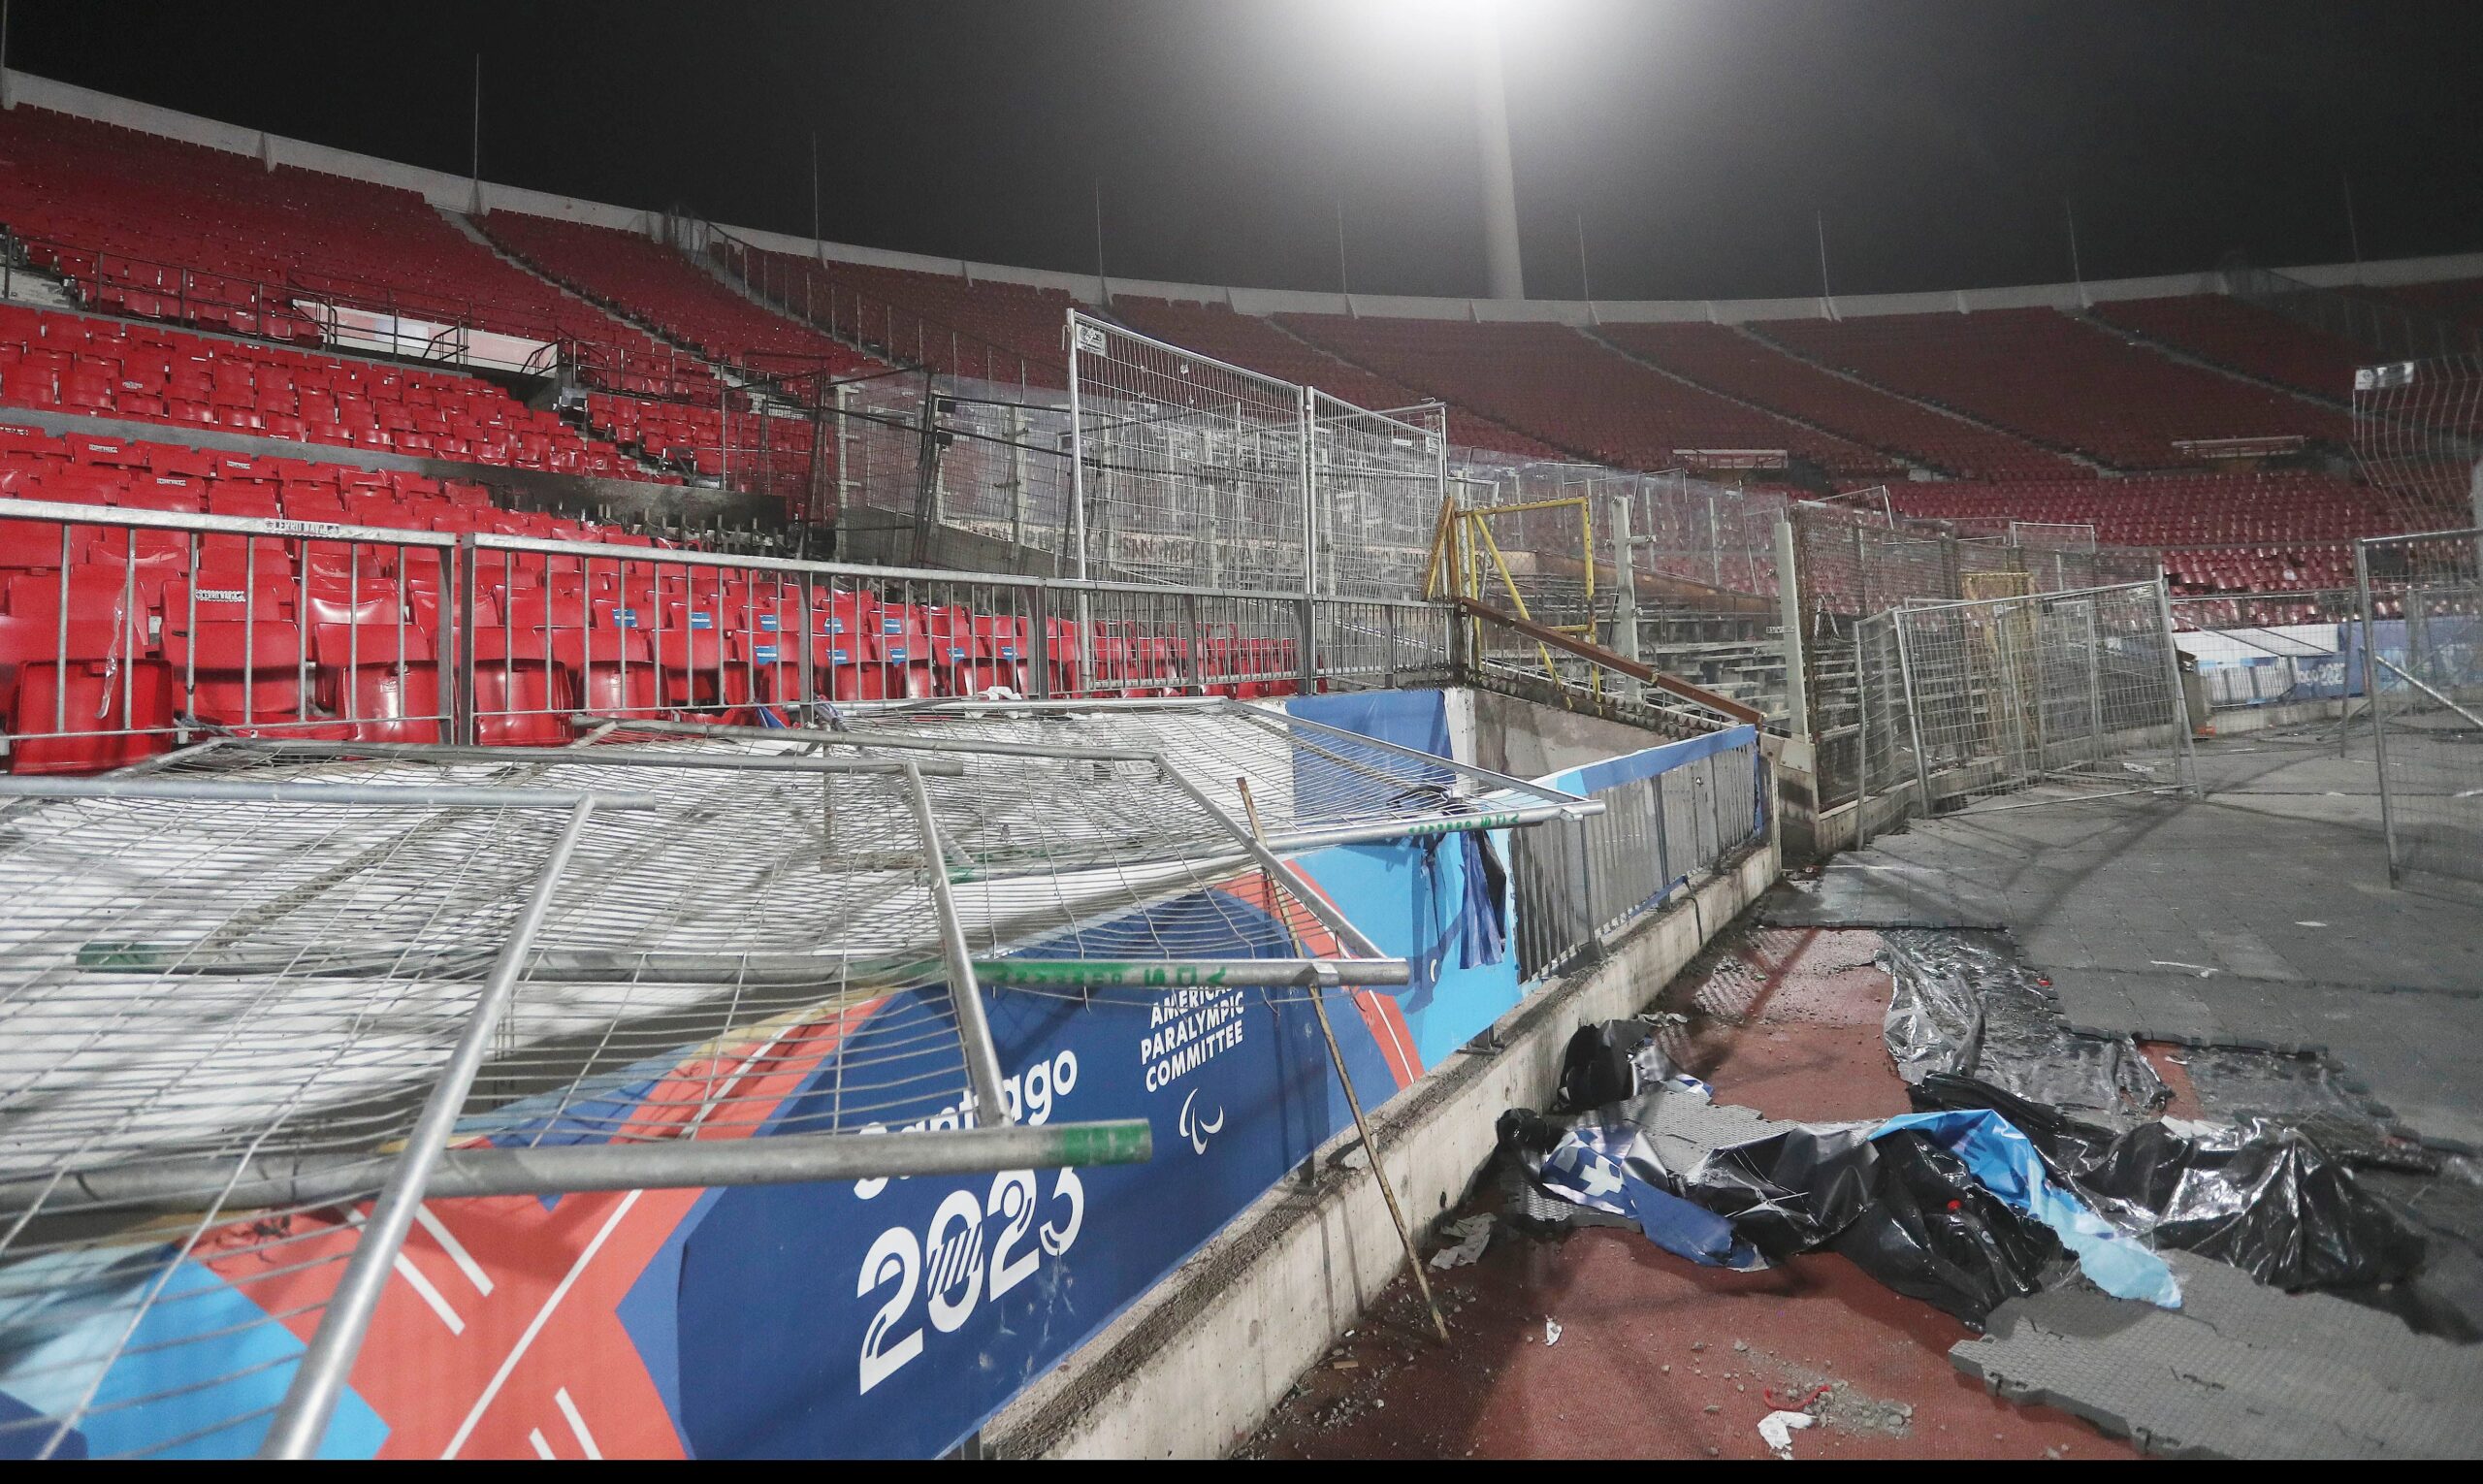 Un sector de la Galería Norte del Estadio Nacional, que incluye el Memorial, sufrió serios destrozos. Foto: Agencia Uno.